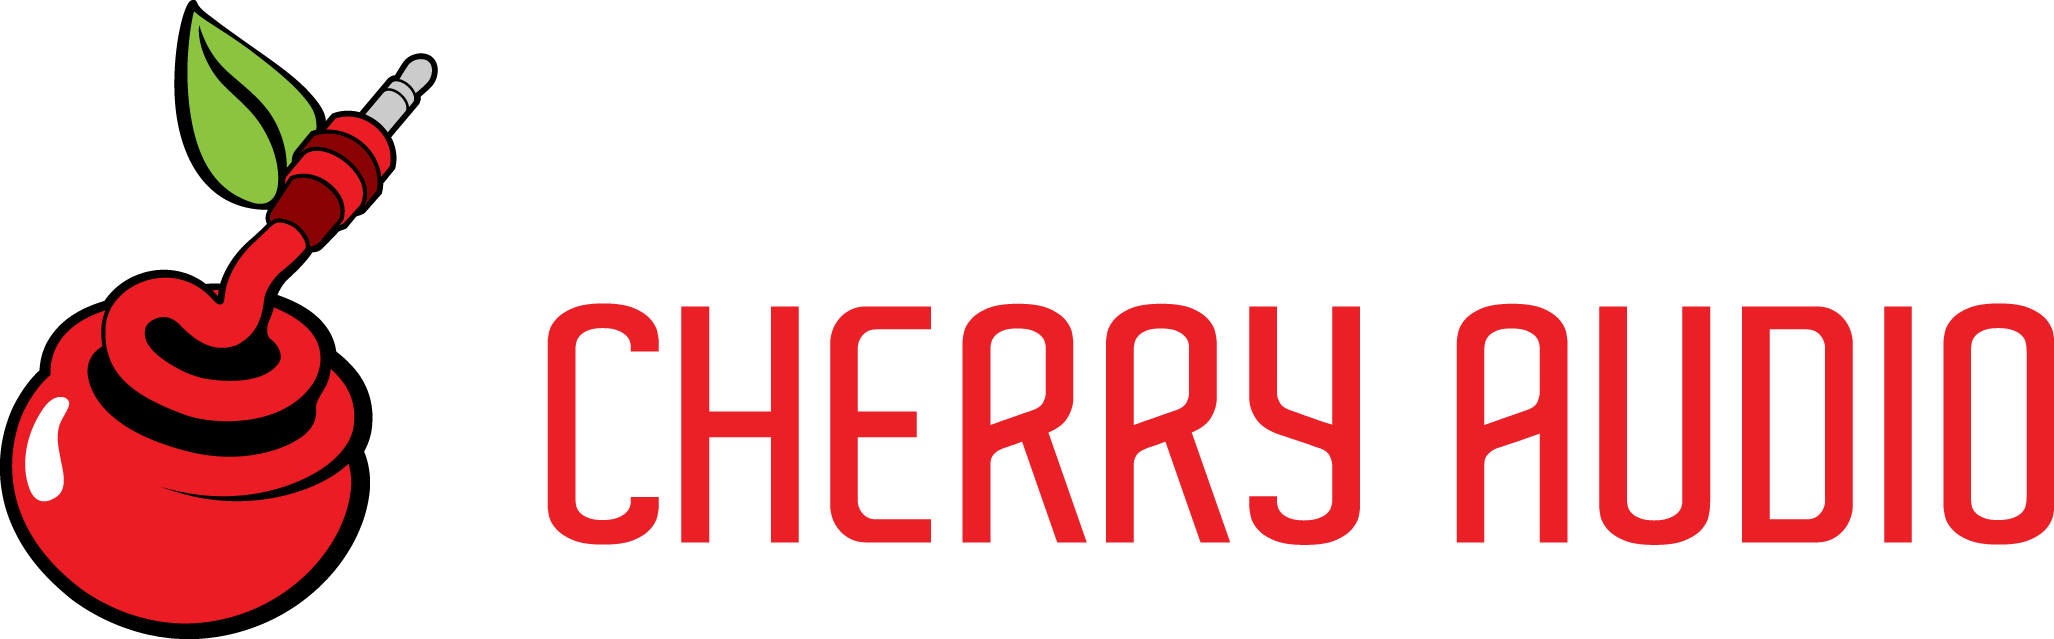 Cherry Audio logo